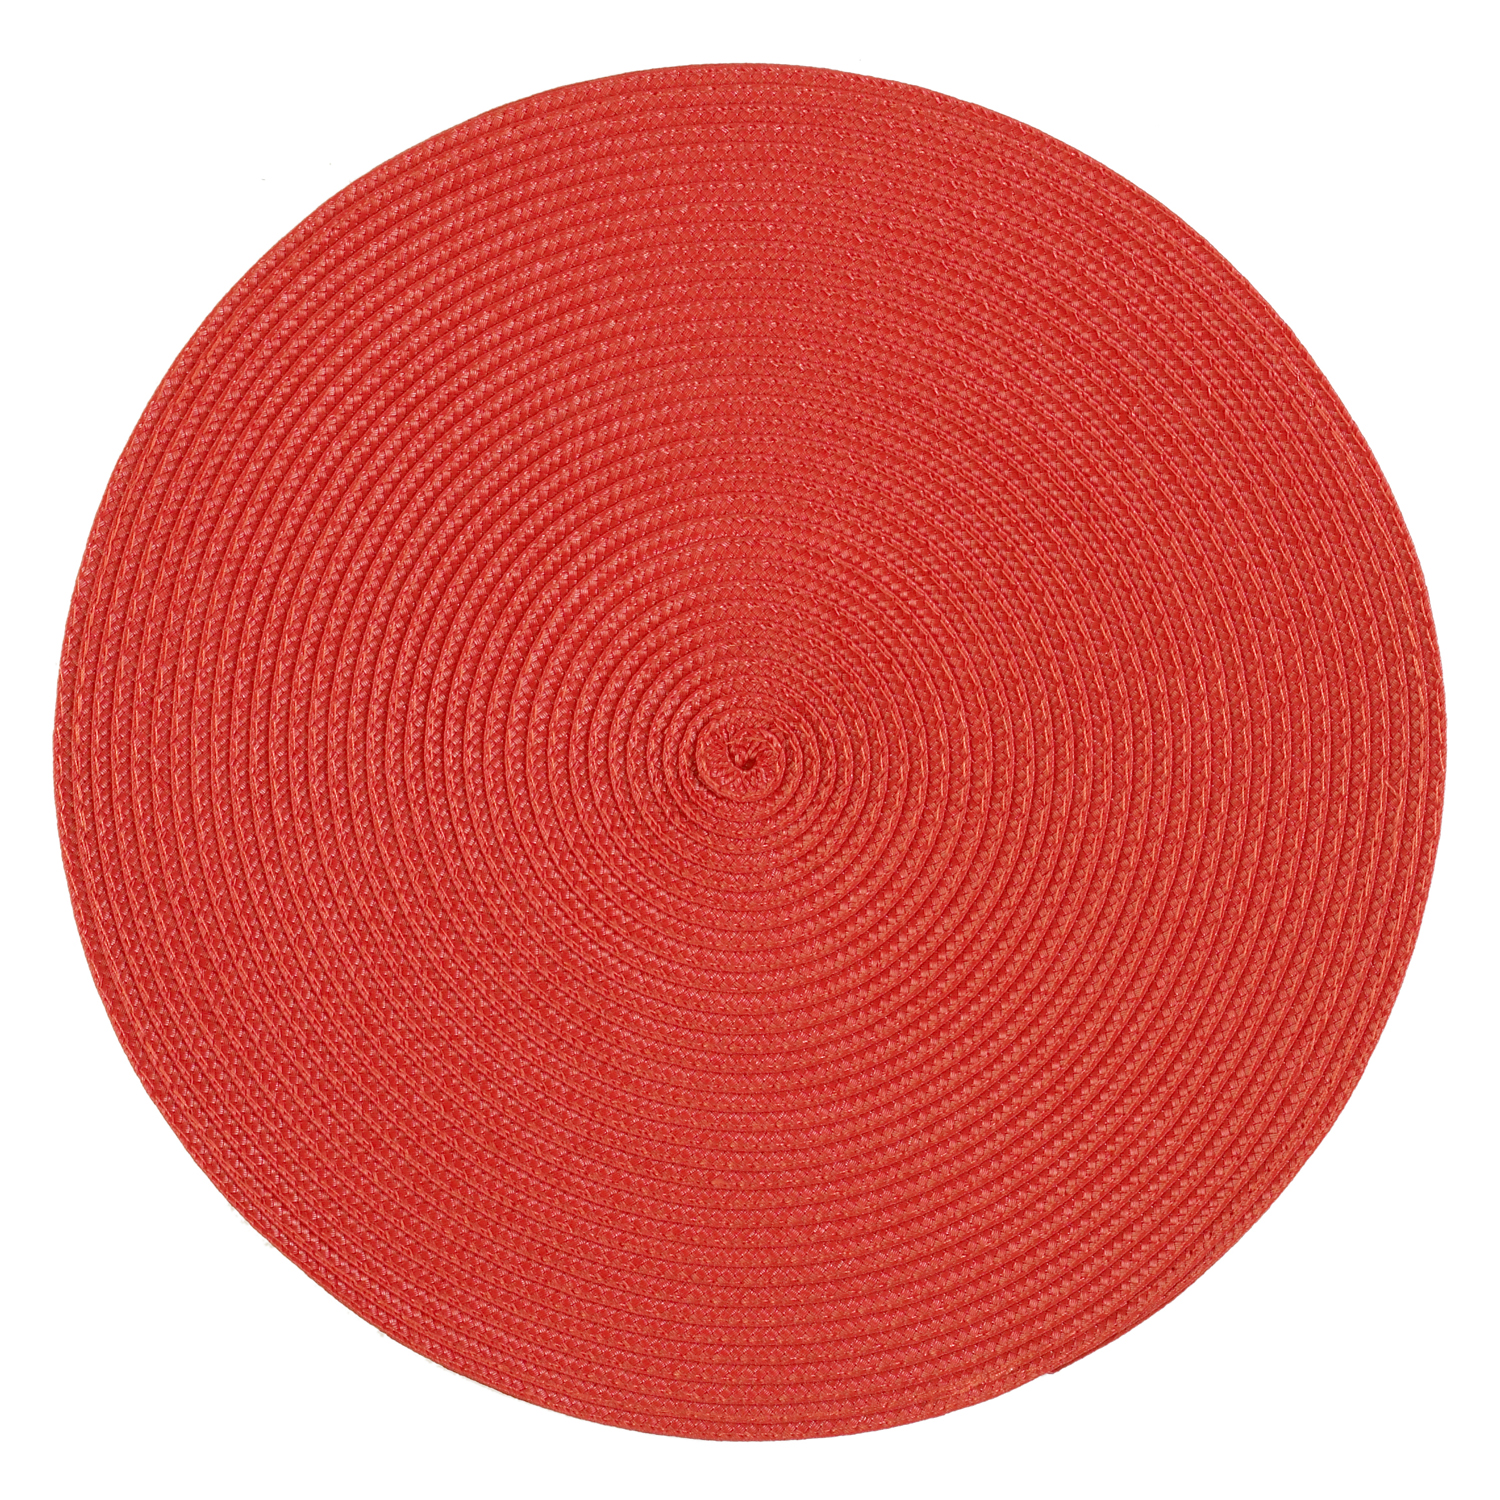 Tischset Polypro rund - Farbe rot